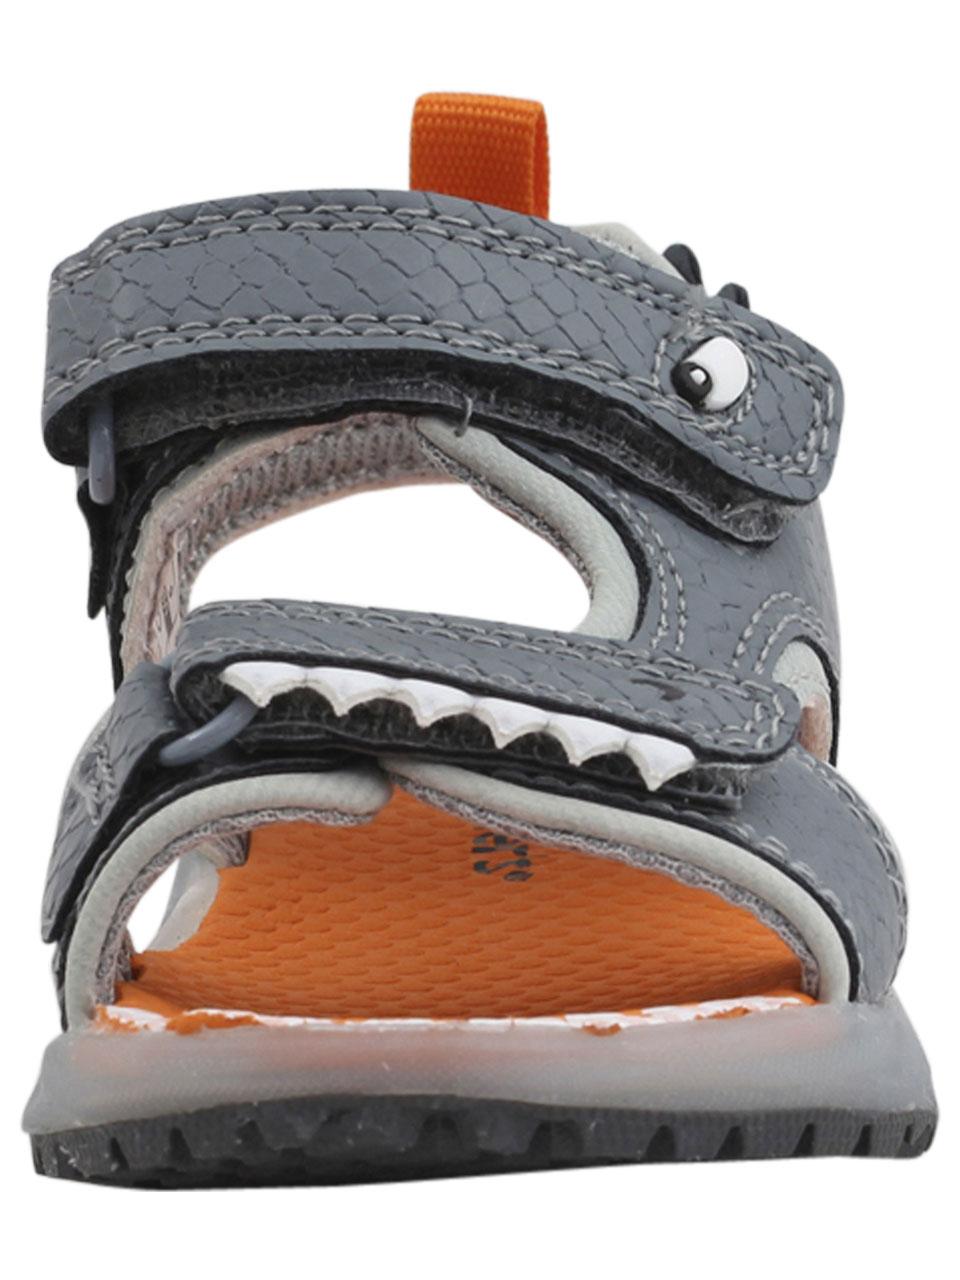 carter's light up shark sandals